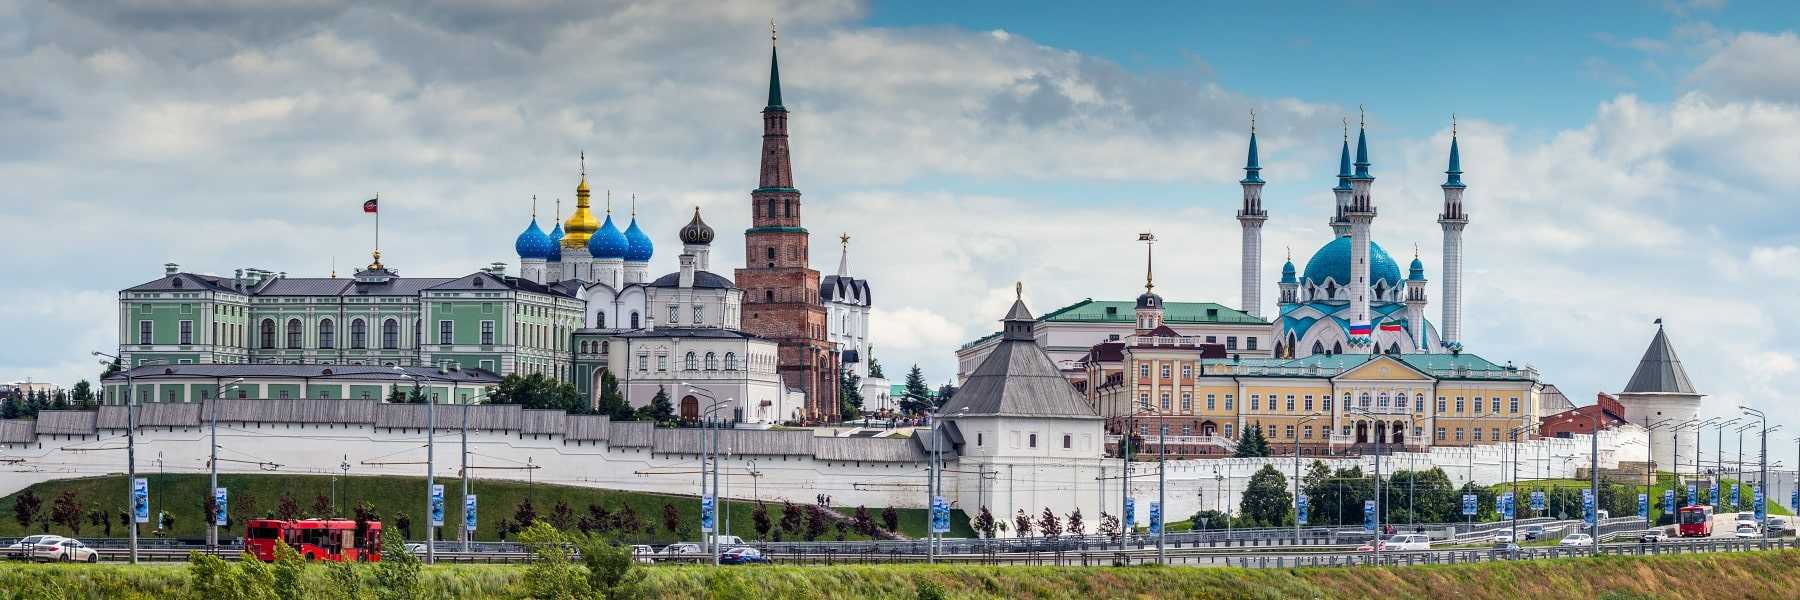 Экскурсия по казанскому кремлю